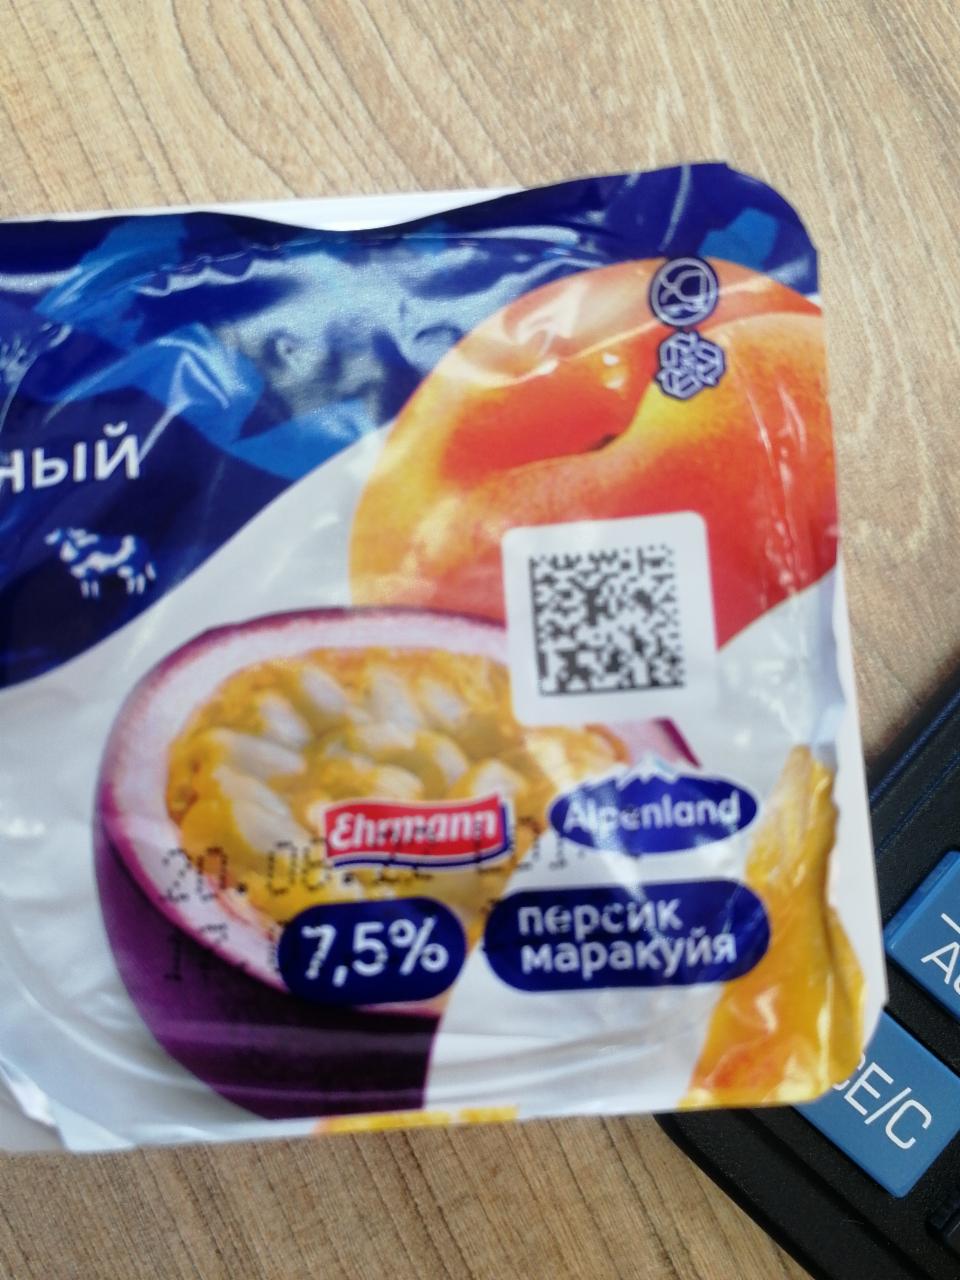 Фото - йогуртный продукт абрикос персик маракуйя 7.5% Alpenland Альпенленд